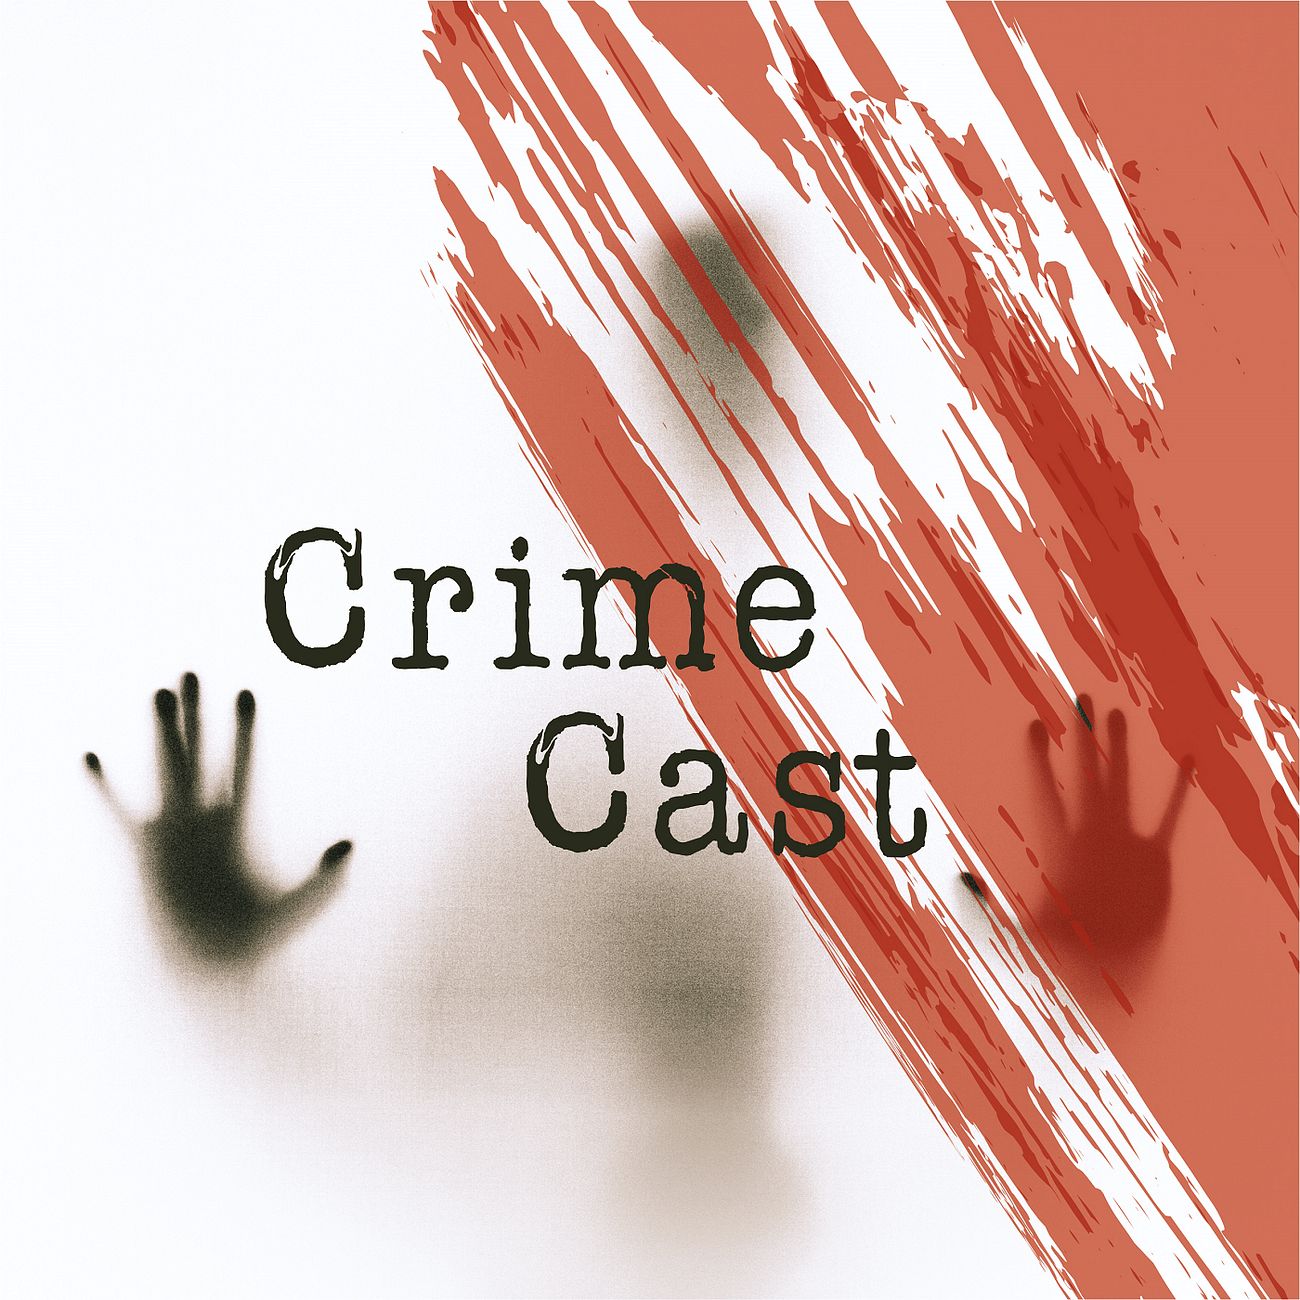 CrimeCast